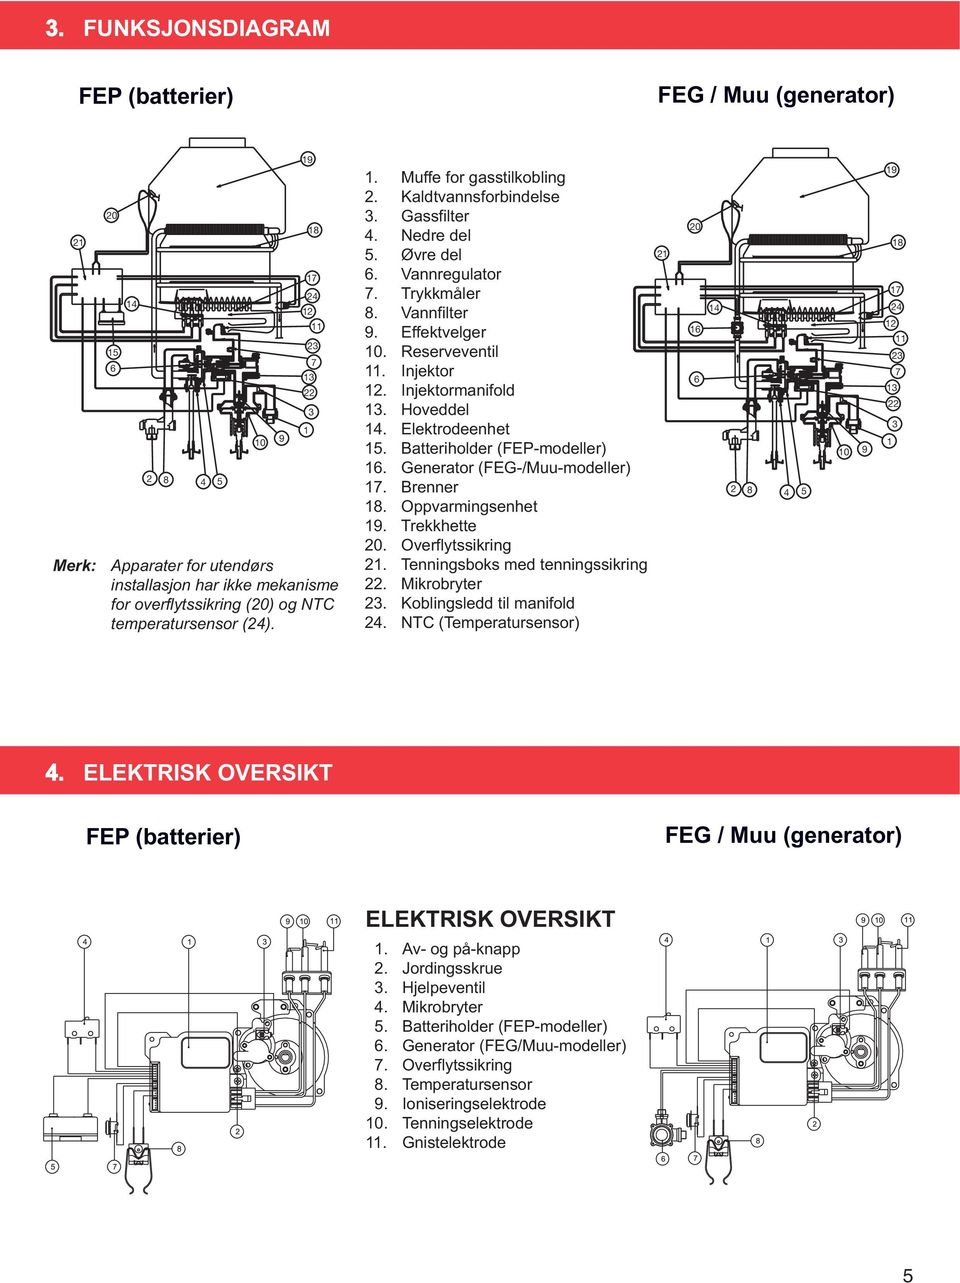 Reserveventil 11. Injektor 12. Injektormanifold 13. Hoveddel 14. Elektrodeenhet 15. Batteriholder (FEP-modeller) 16. Generator (FEG-/Muu-modeller) 17. Brenner 18. Oppvarmingsenhet 19. Trekkhette 20.